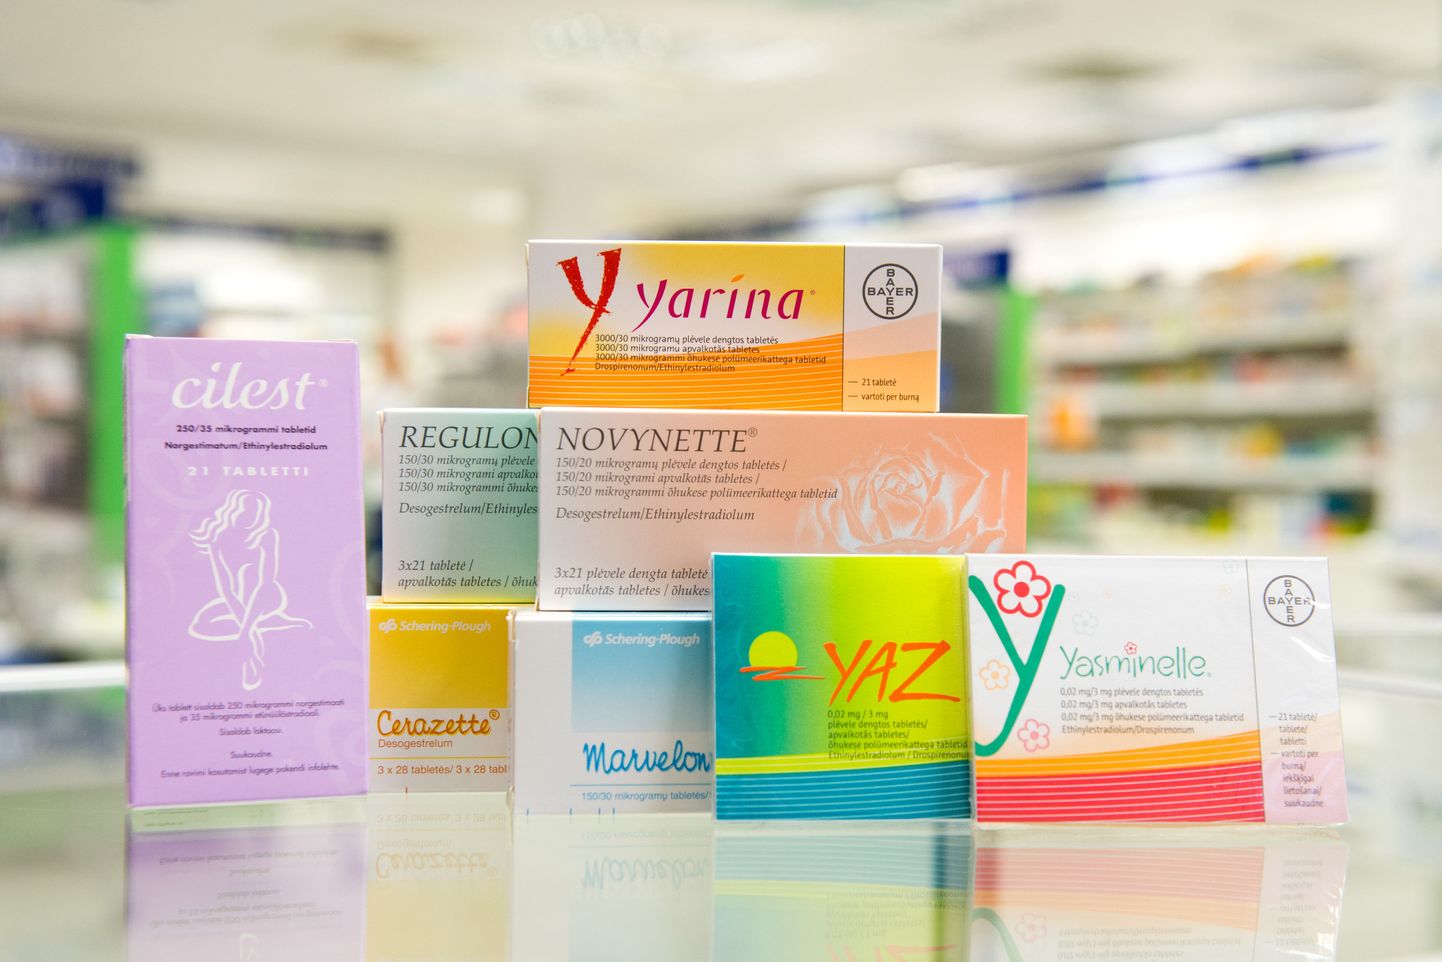 Eestis laialt levinud rasestumisvastased tabletid, mille ohutust kontrollitakse.